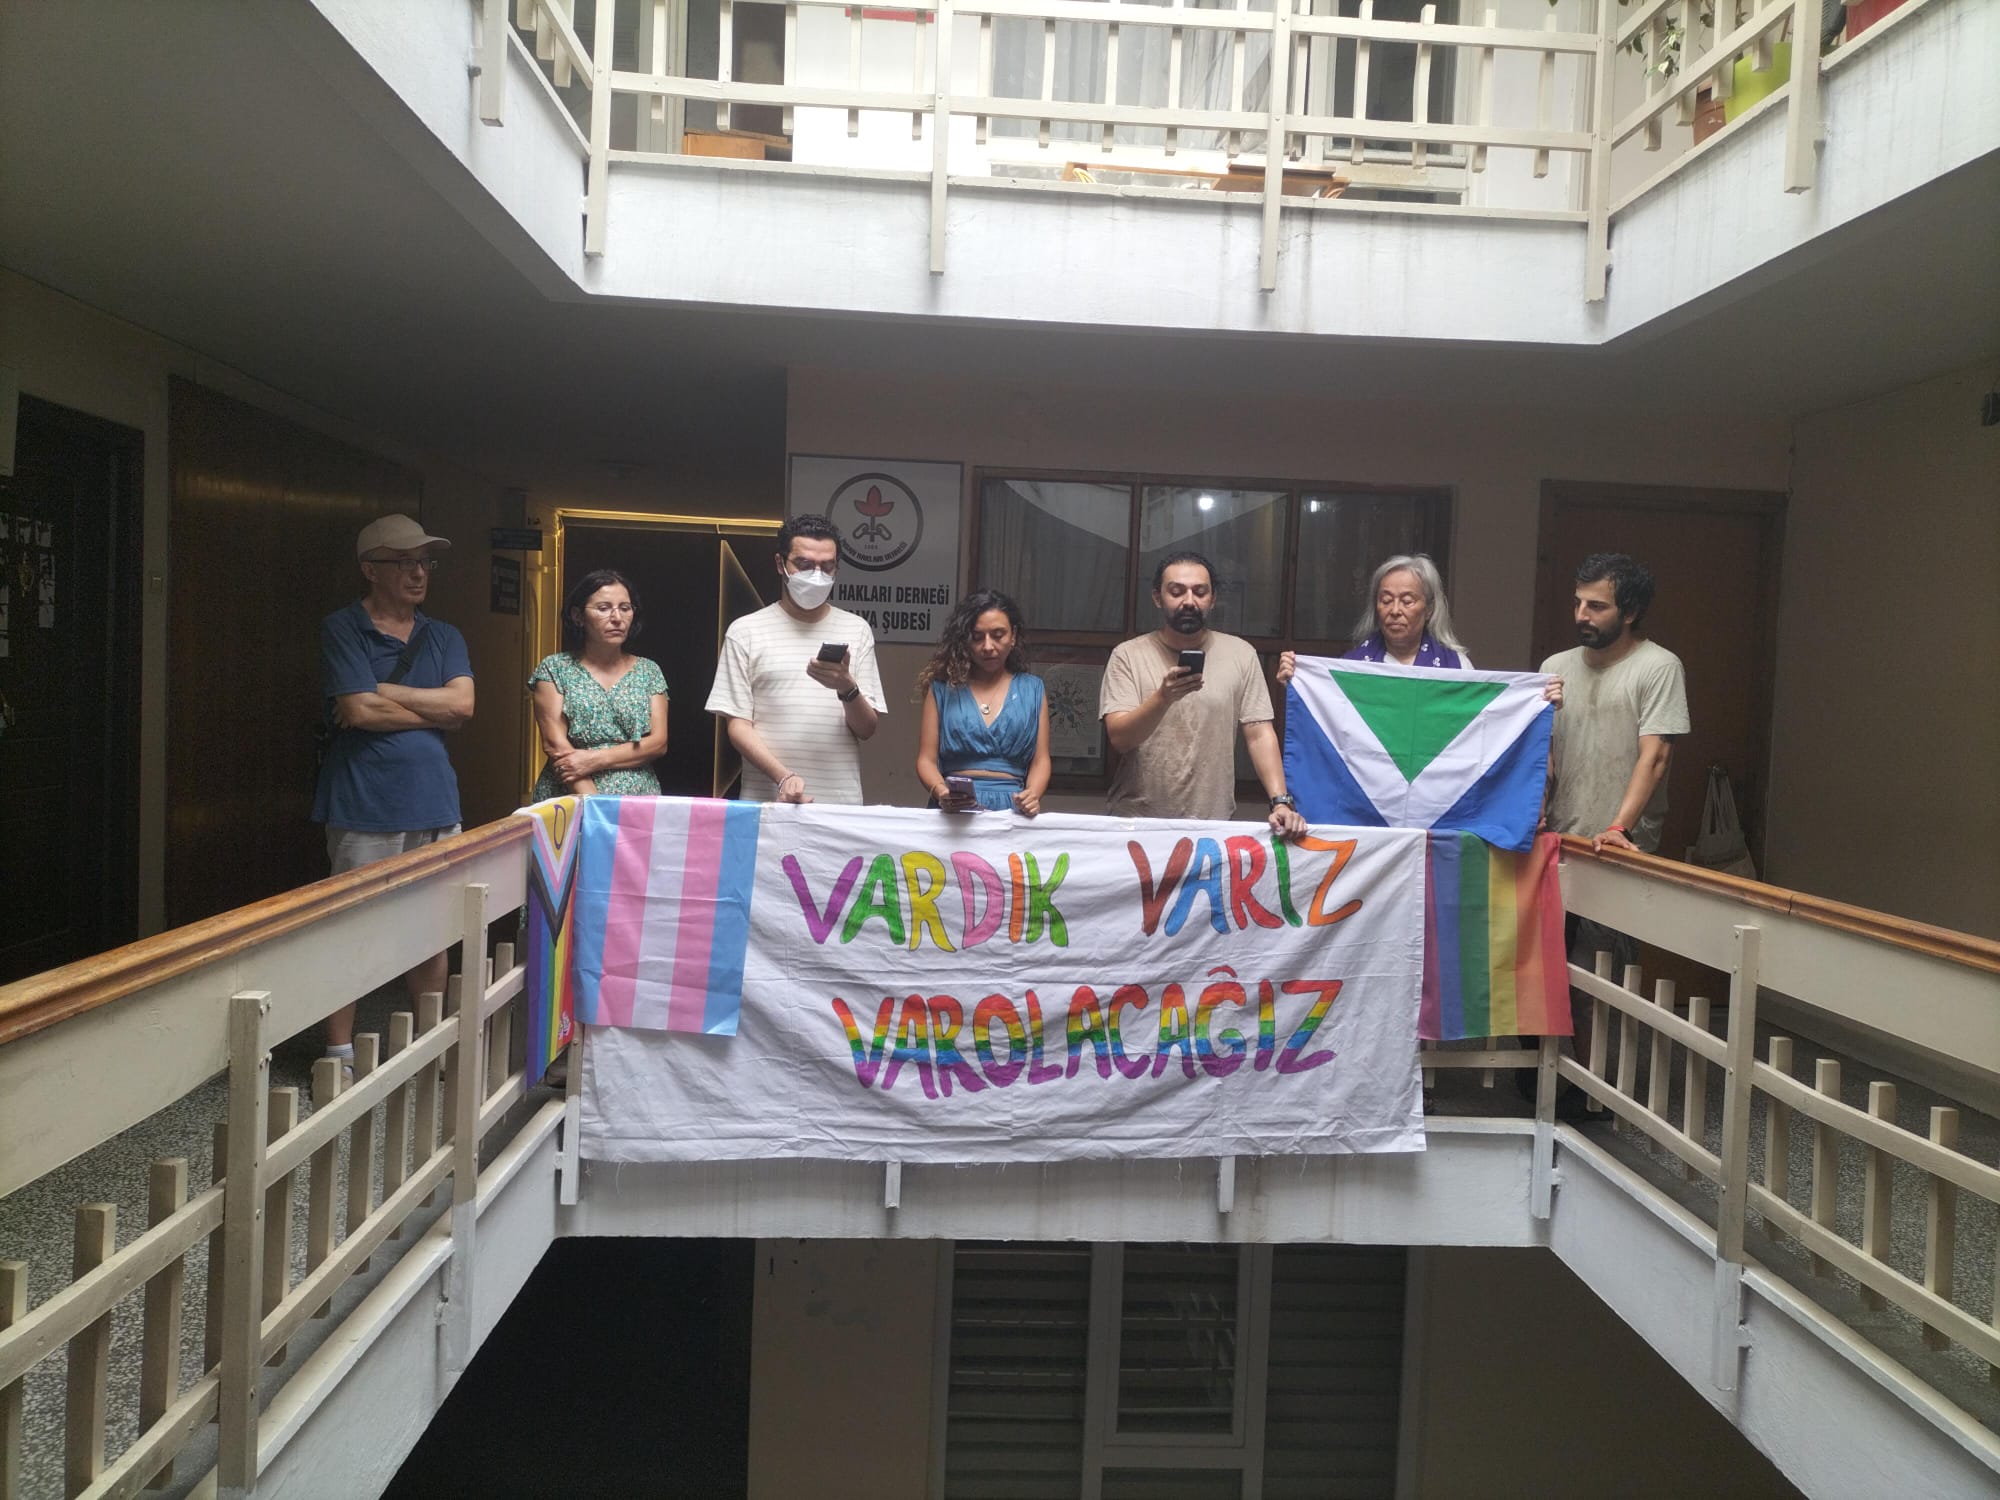 İnsan Hakları Derneği: “Bu kararı kabul etmiyoruz” | Kaos GL - LGBTİ+ Haber Portalı